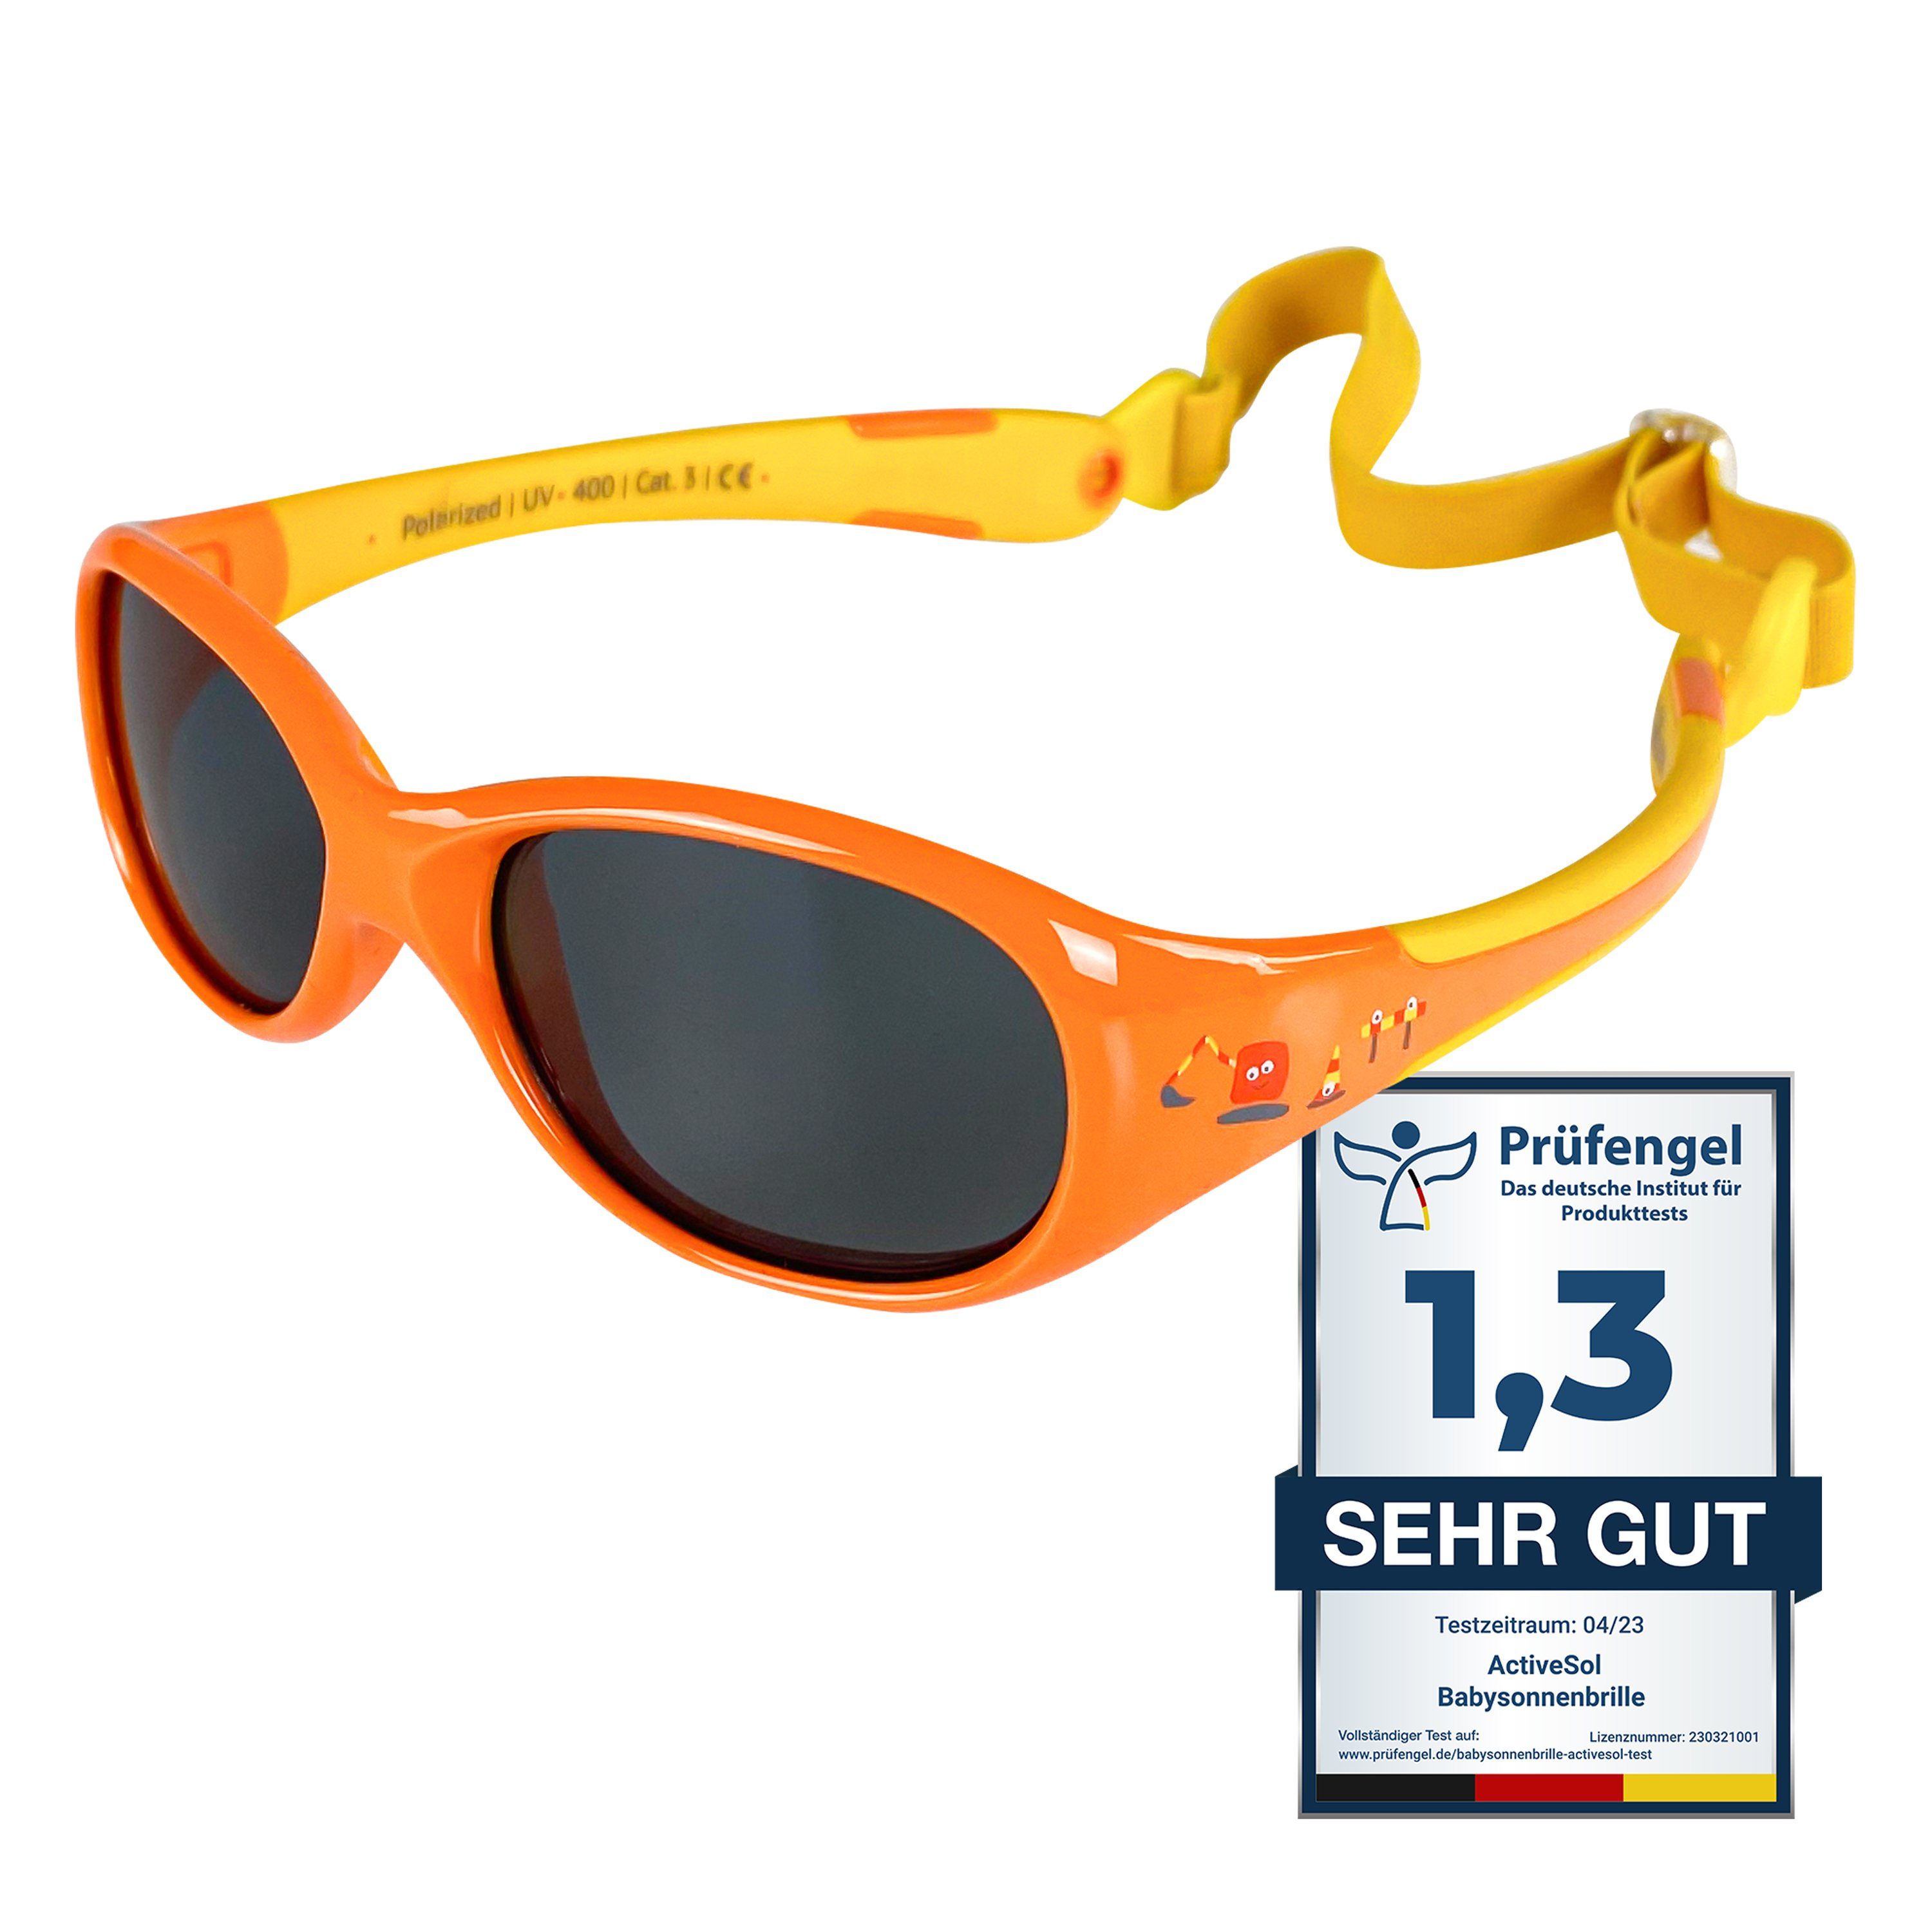 ActiveSol SUNGLASSES Sonnenbrille Baby Sonnenbrille, Jungen & Mädchen, 0-2 Jahre (in bunten Farben & mit pfiffigen Motiven) Unzerstörbar & Flexibel The Builder